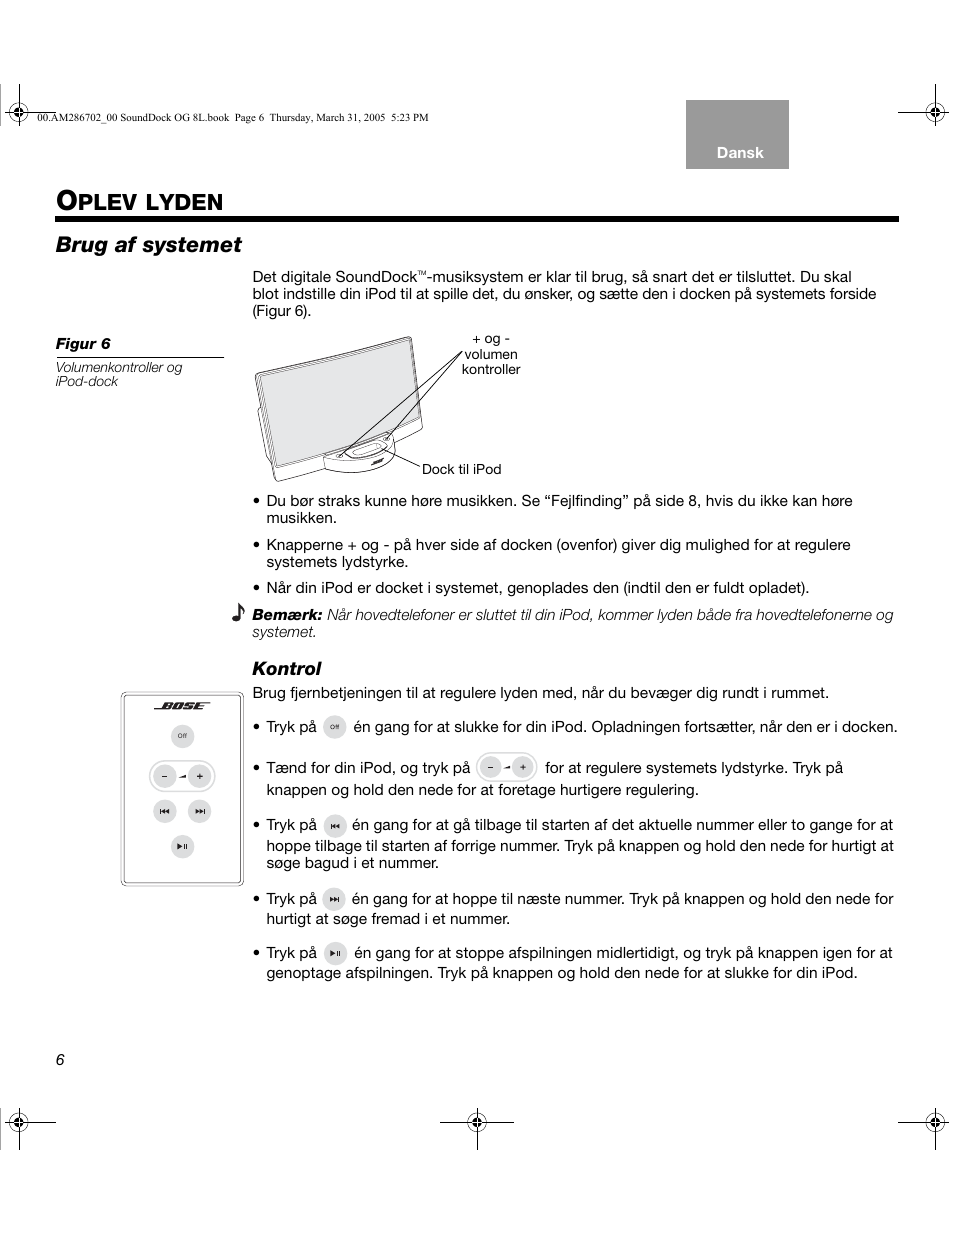 Plev lyden, Brug af systemet | Bose SoundDock User Manual | Page 16 / 72